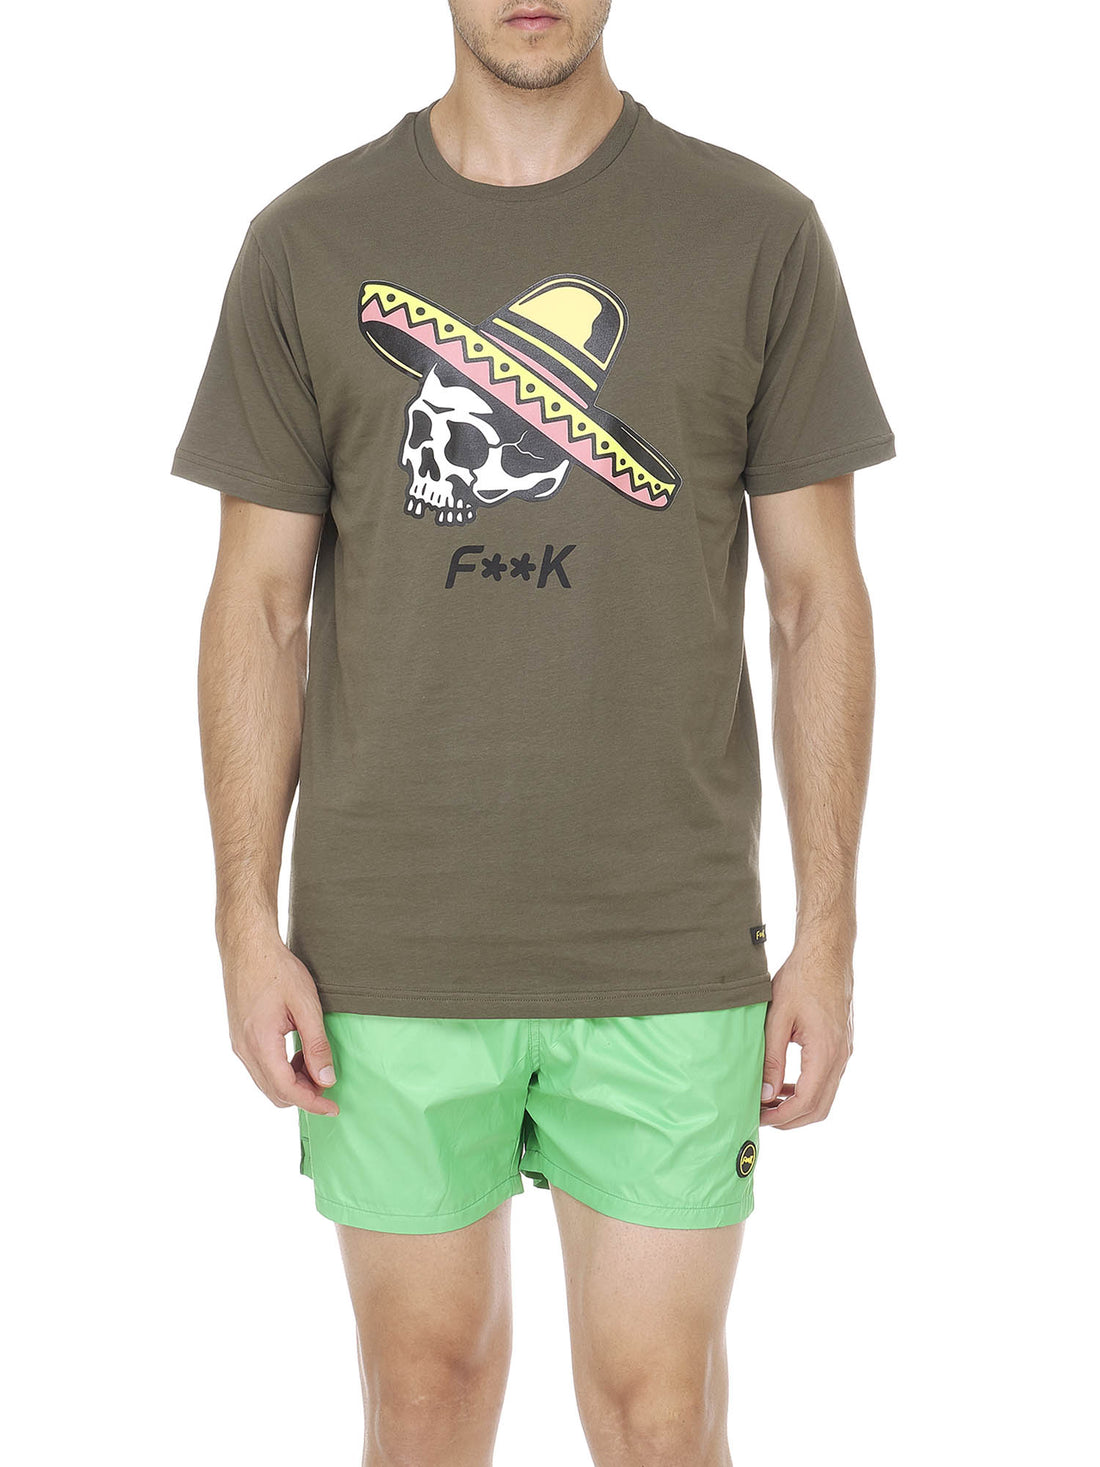 T-shirt Verde F**k